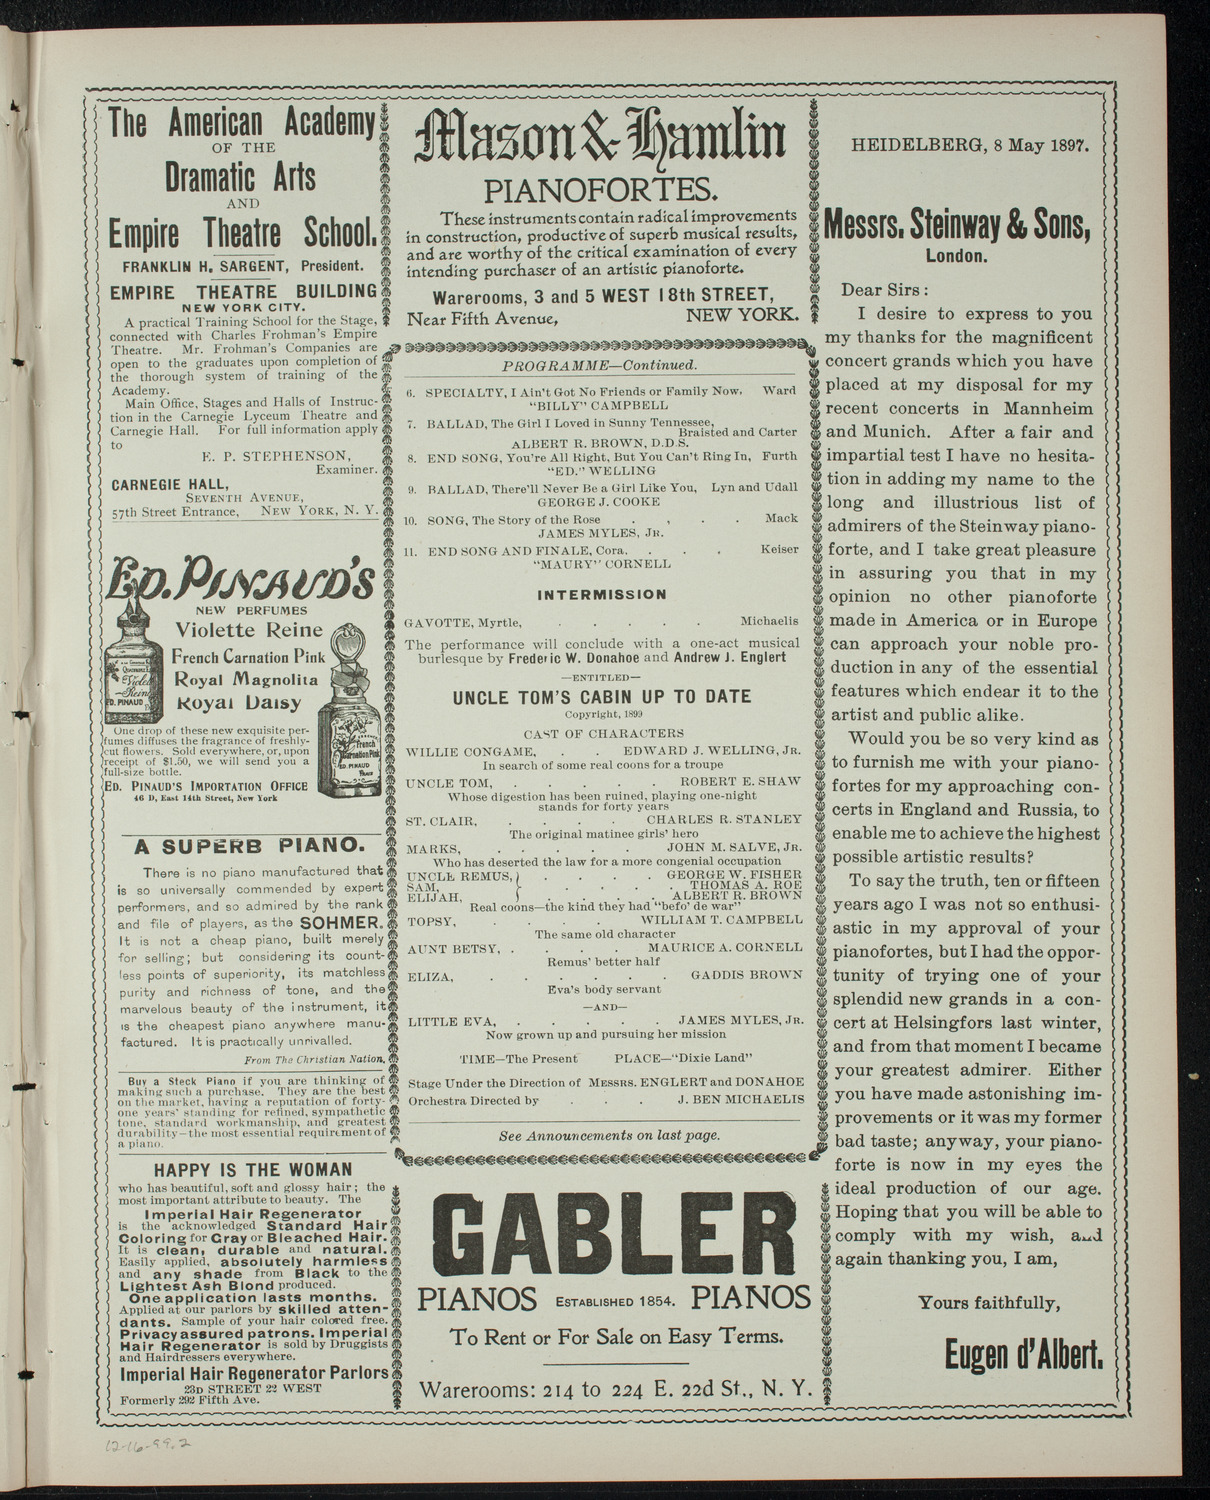 Harlem Wheelmen Minstrels, December 16, 1899, program page 3